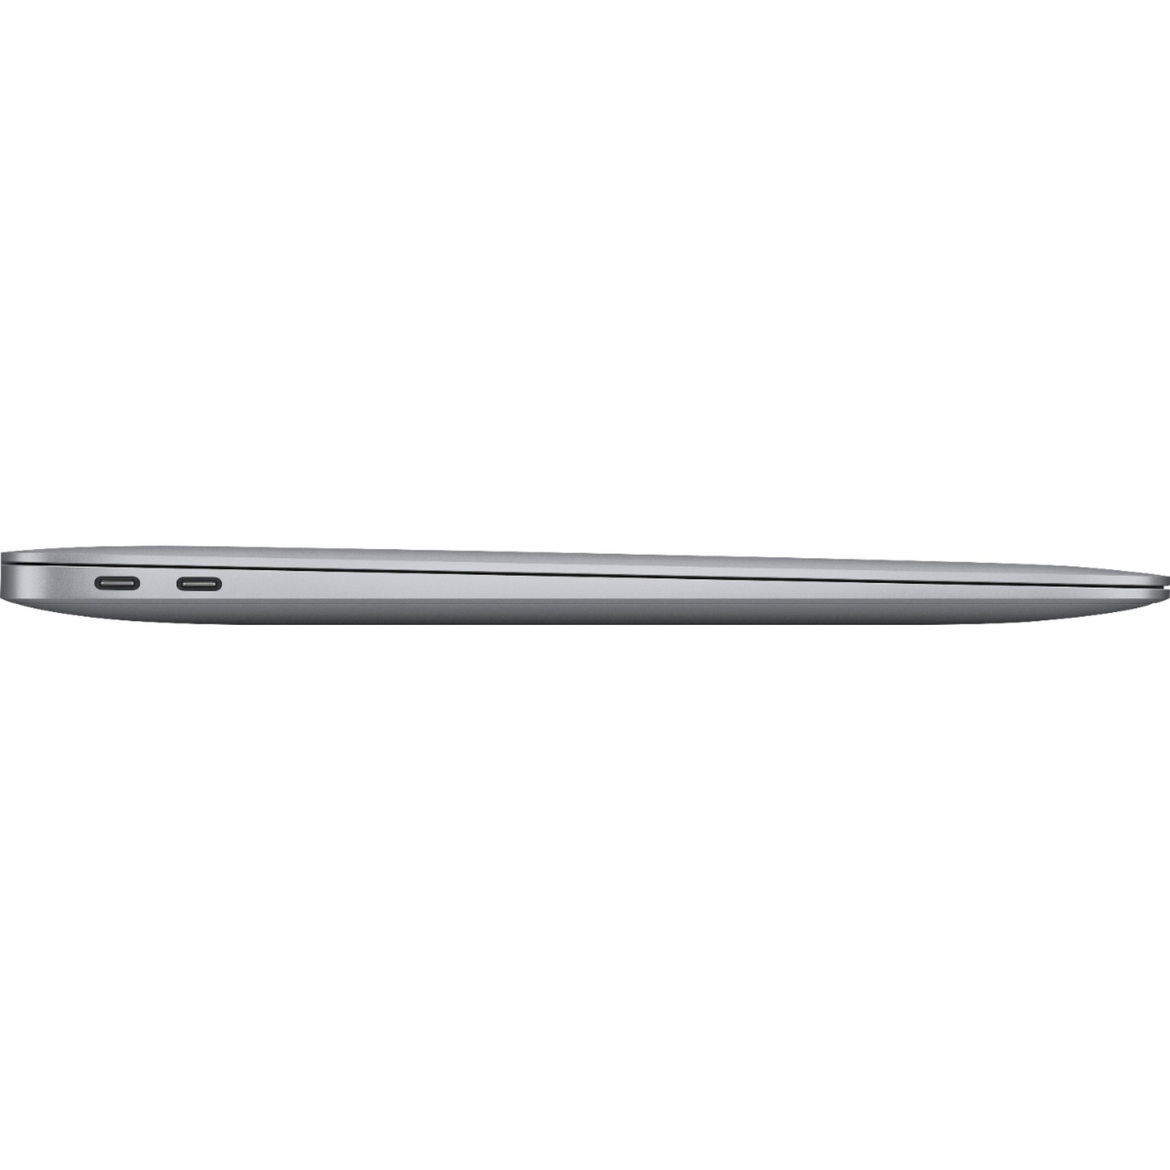 Apple MacBook Air Retina 13.3